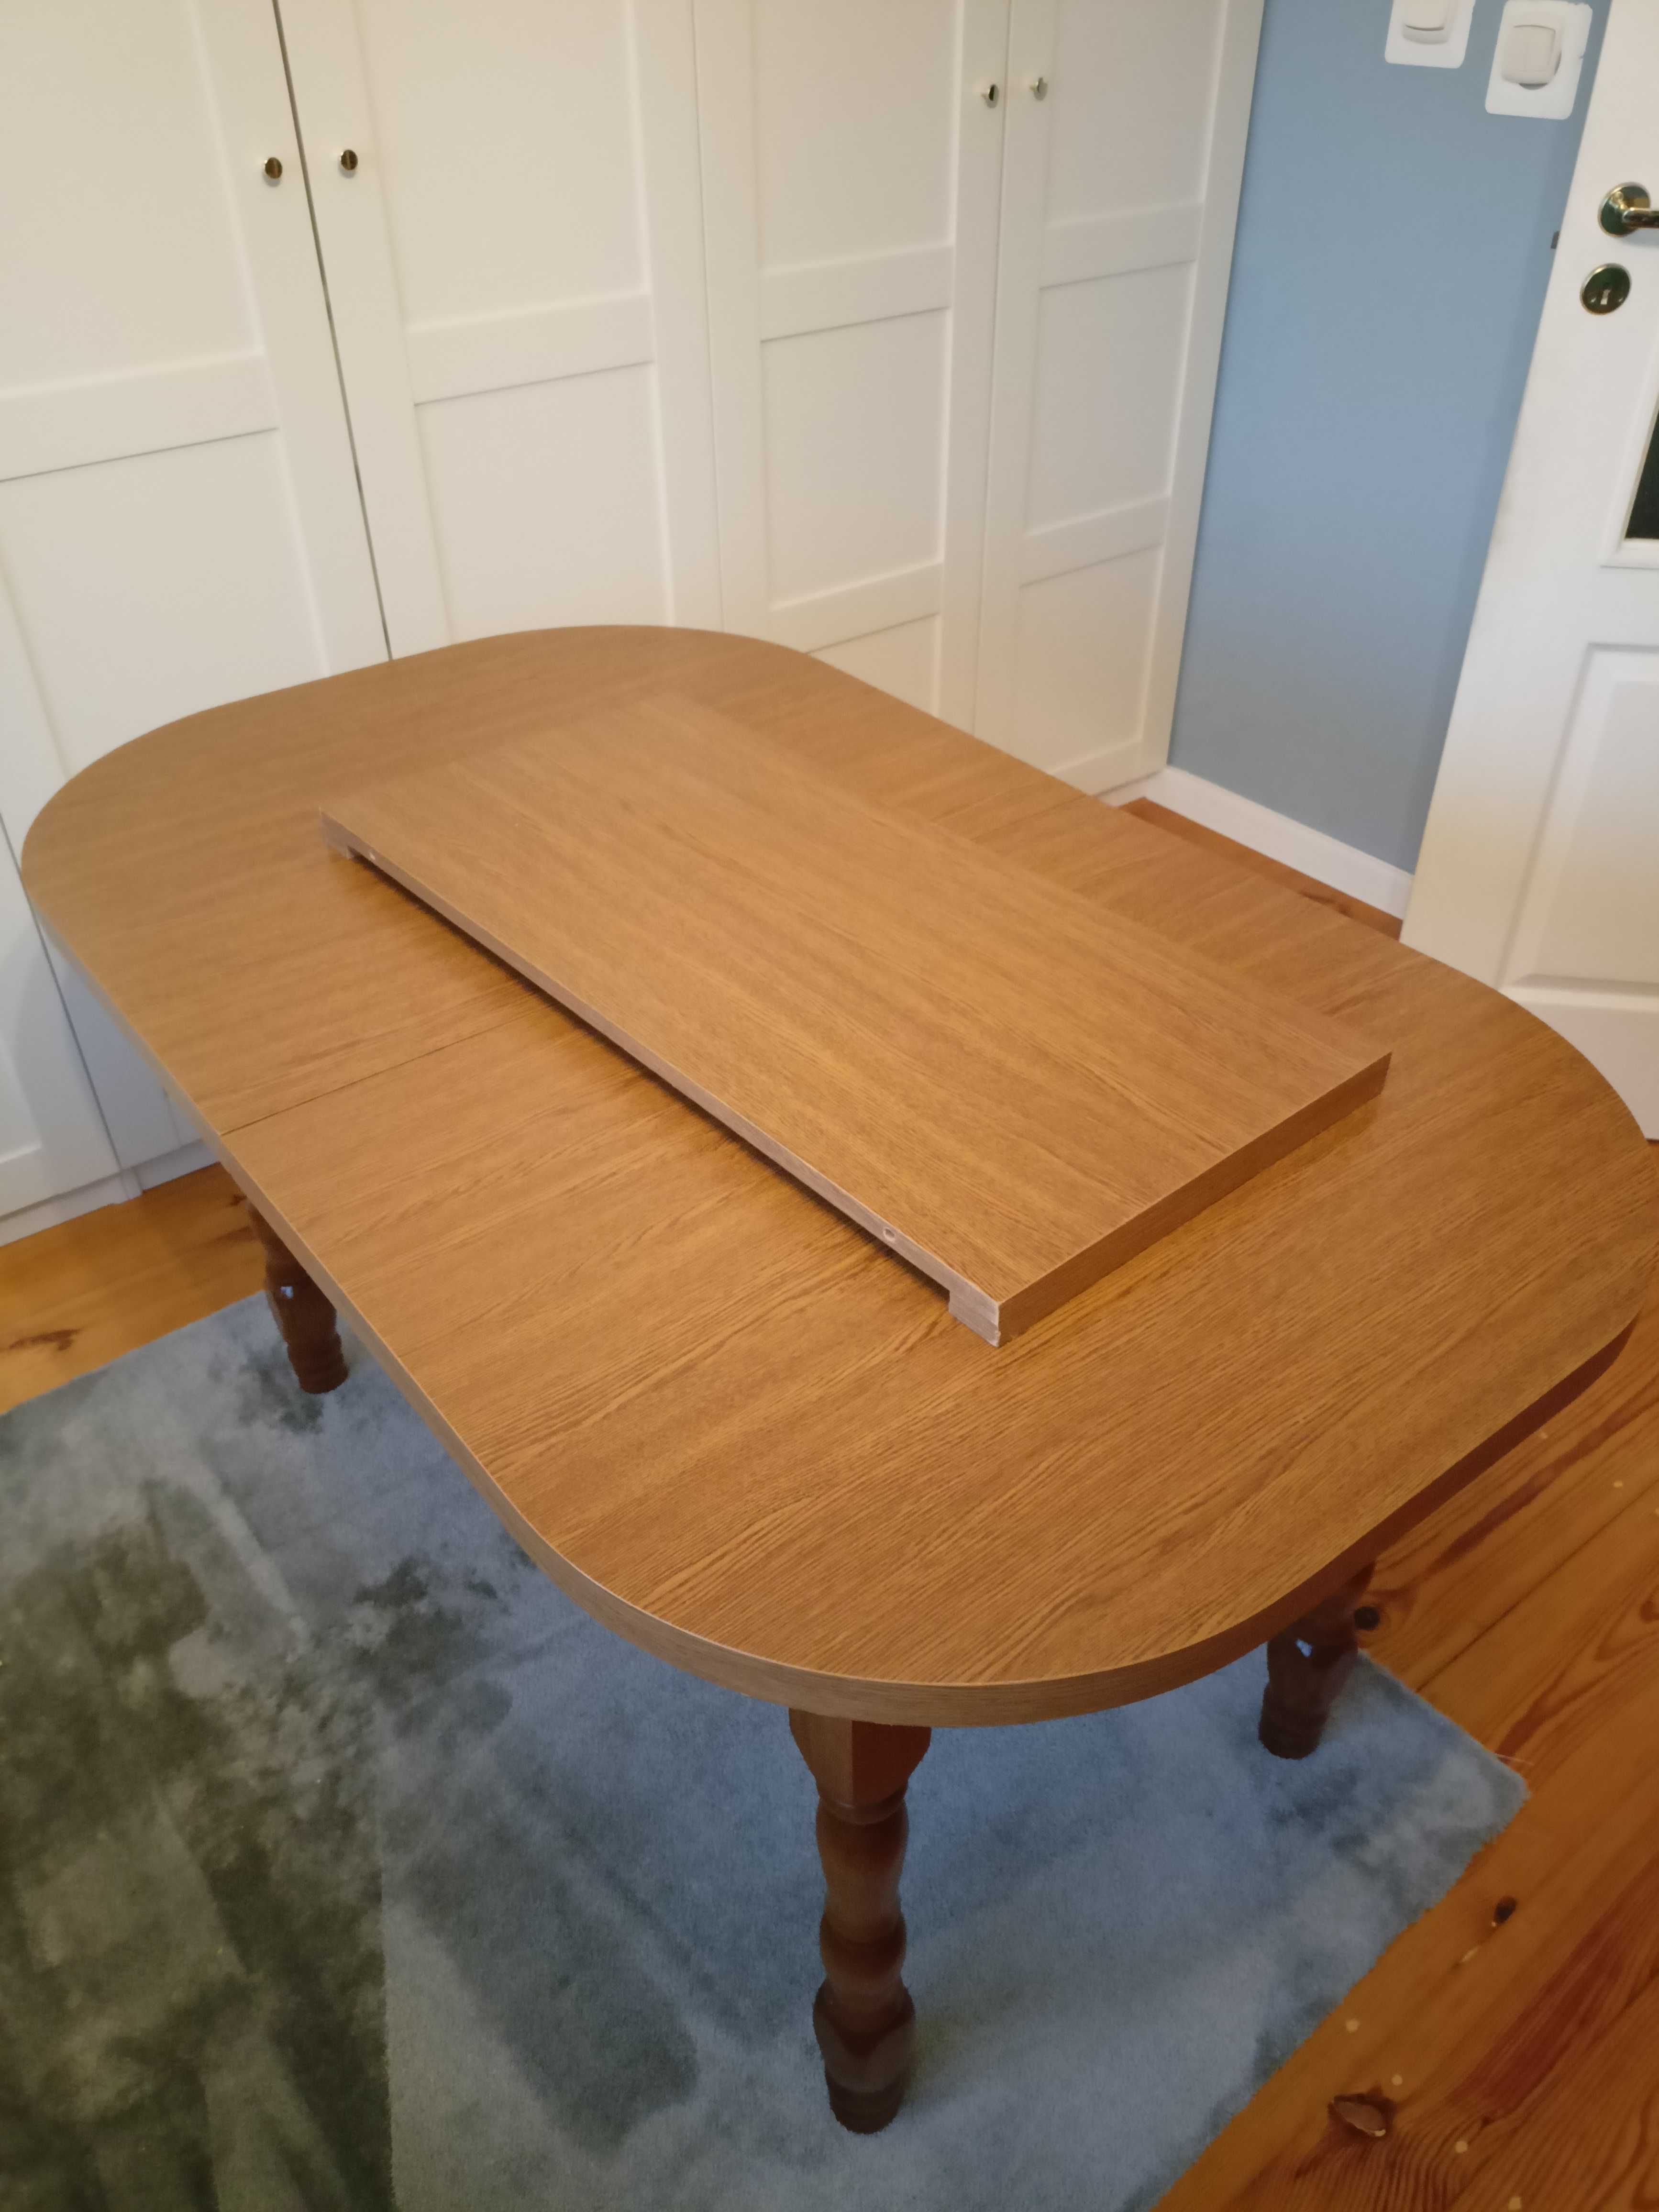 Stół pokojowy, rozsuwany - 180/140 cm x 85 cm